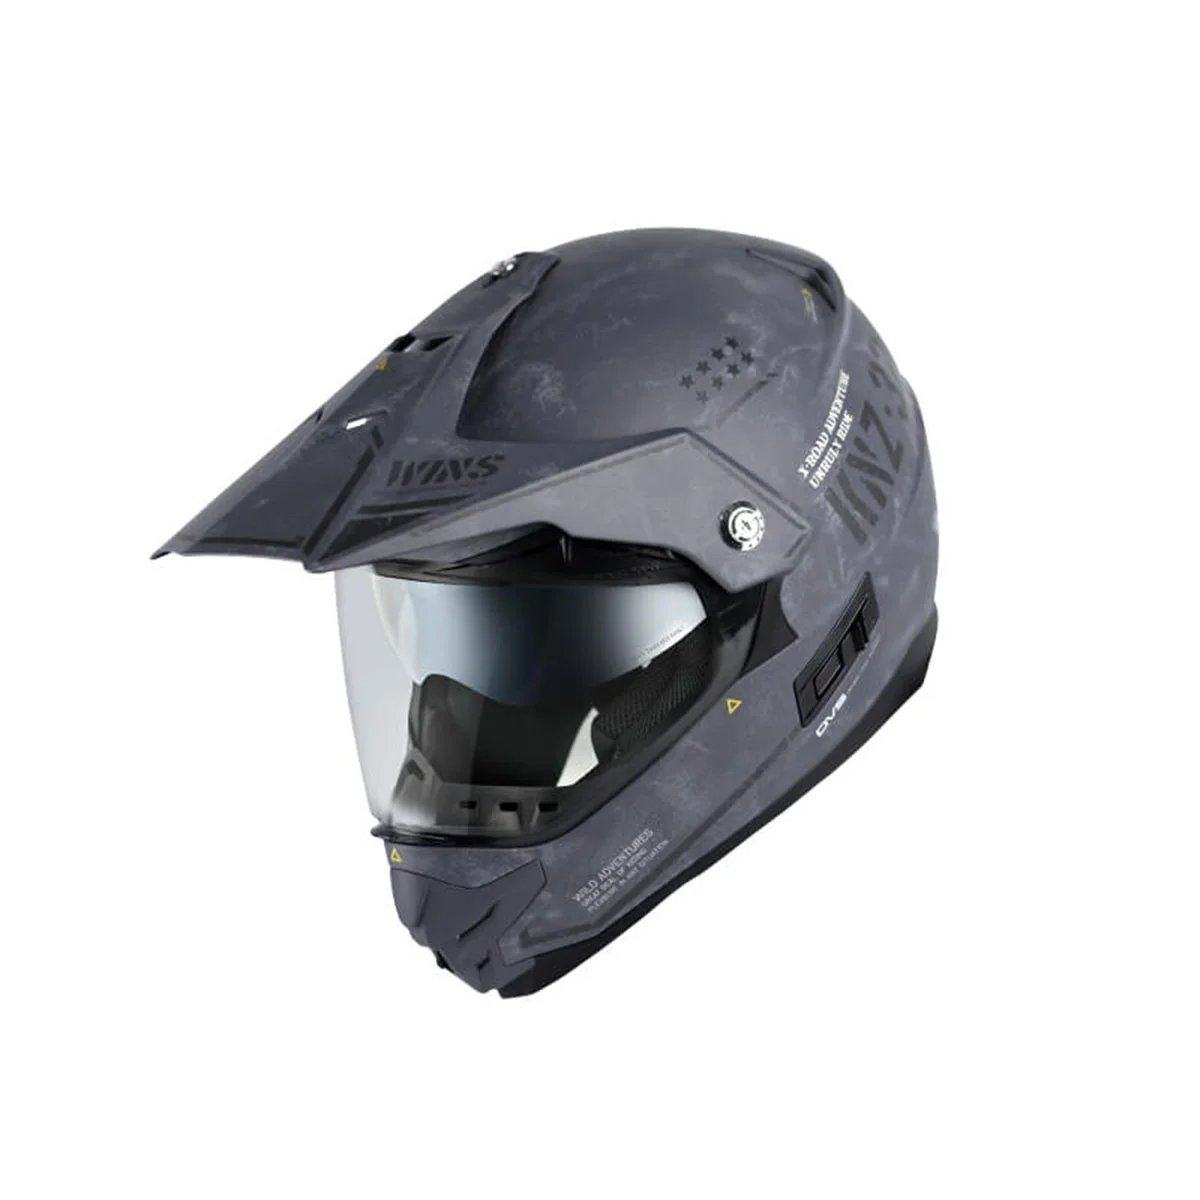 WINS X-ROAD COMBAT ヘルメット マットアーミーグレー 